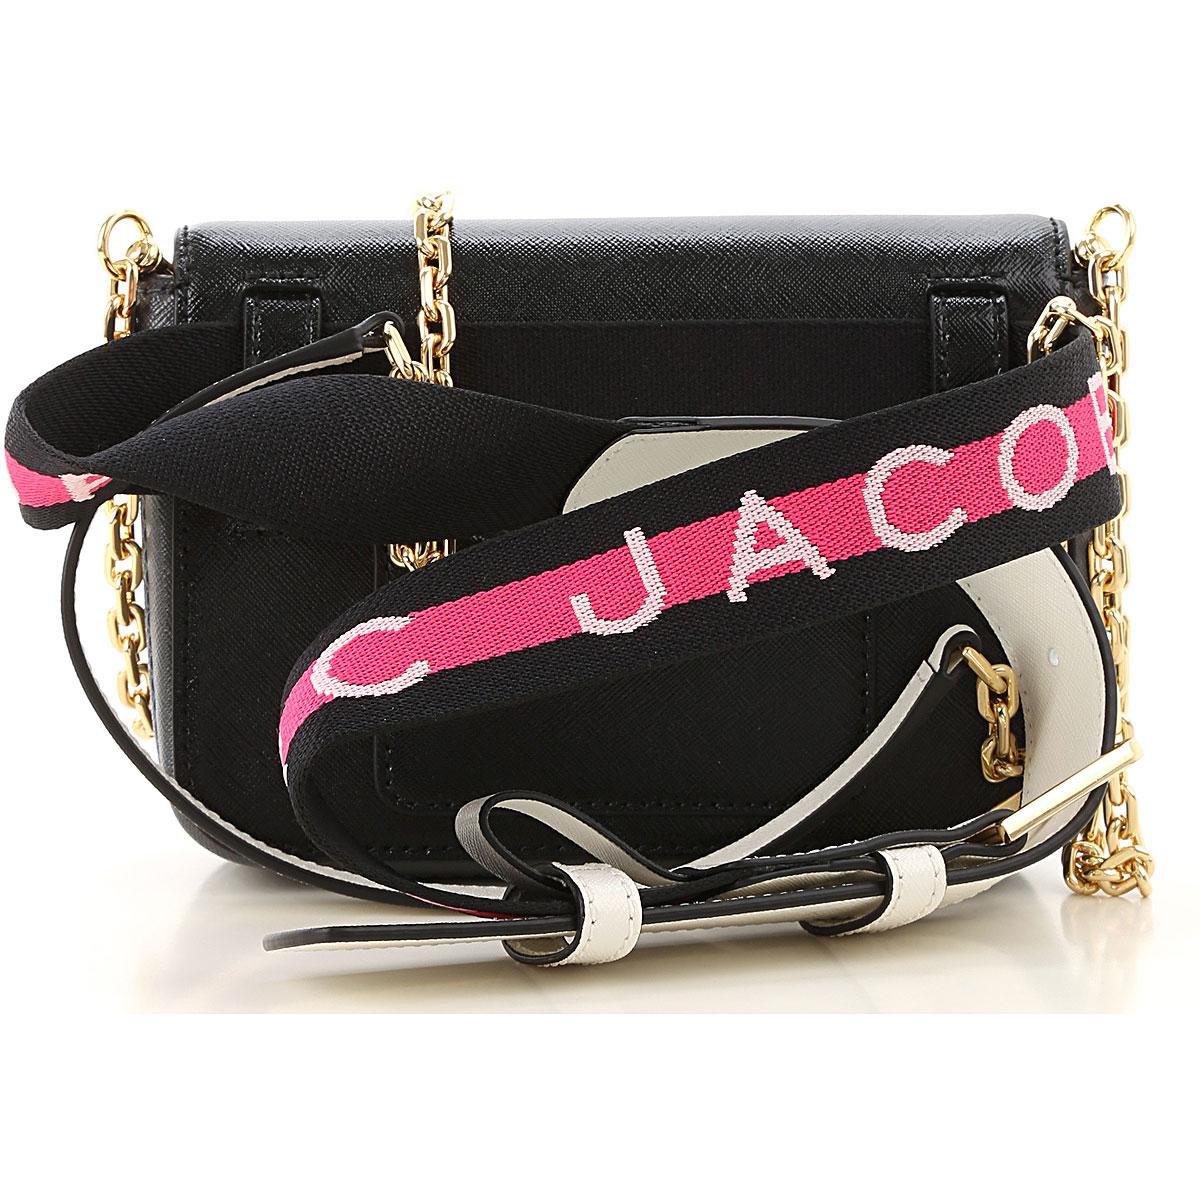 Marc Jacobs Shoulder Bag For Women On Sale in Black - Lyst